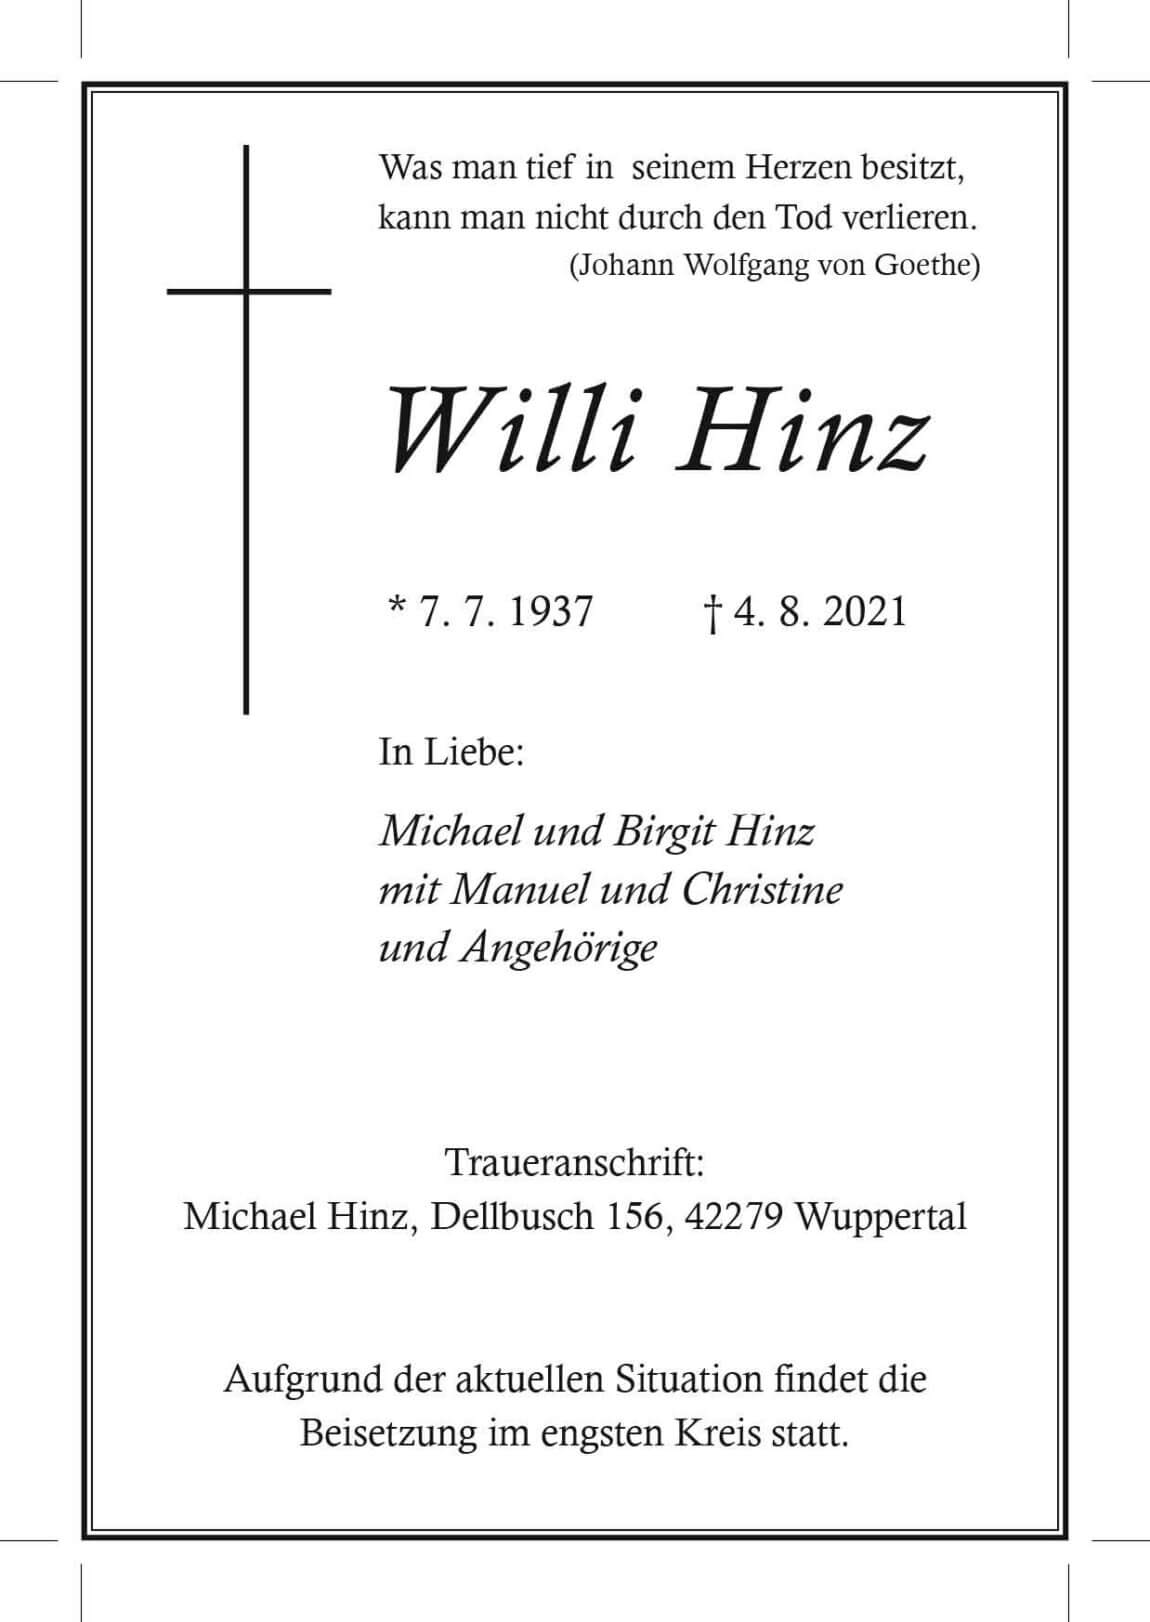 11.08.2021_Hinz-Willi.jpg